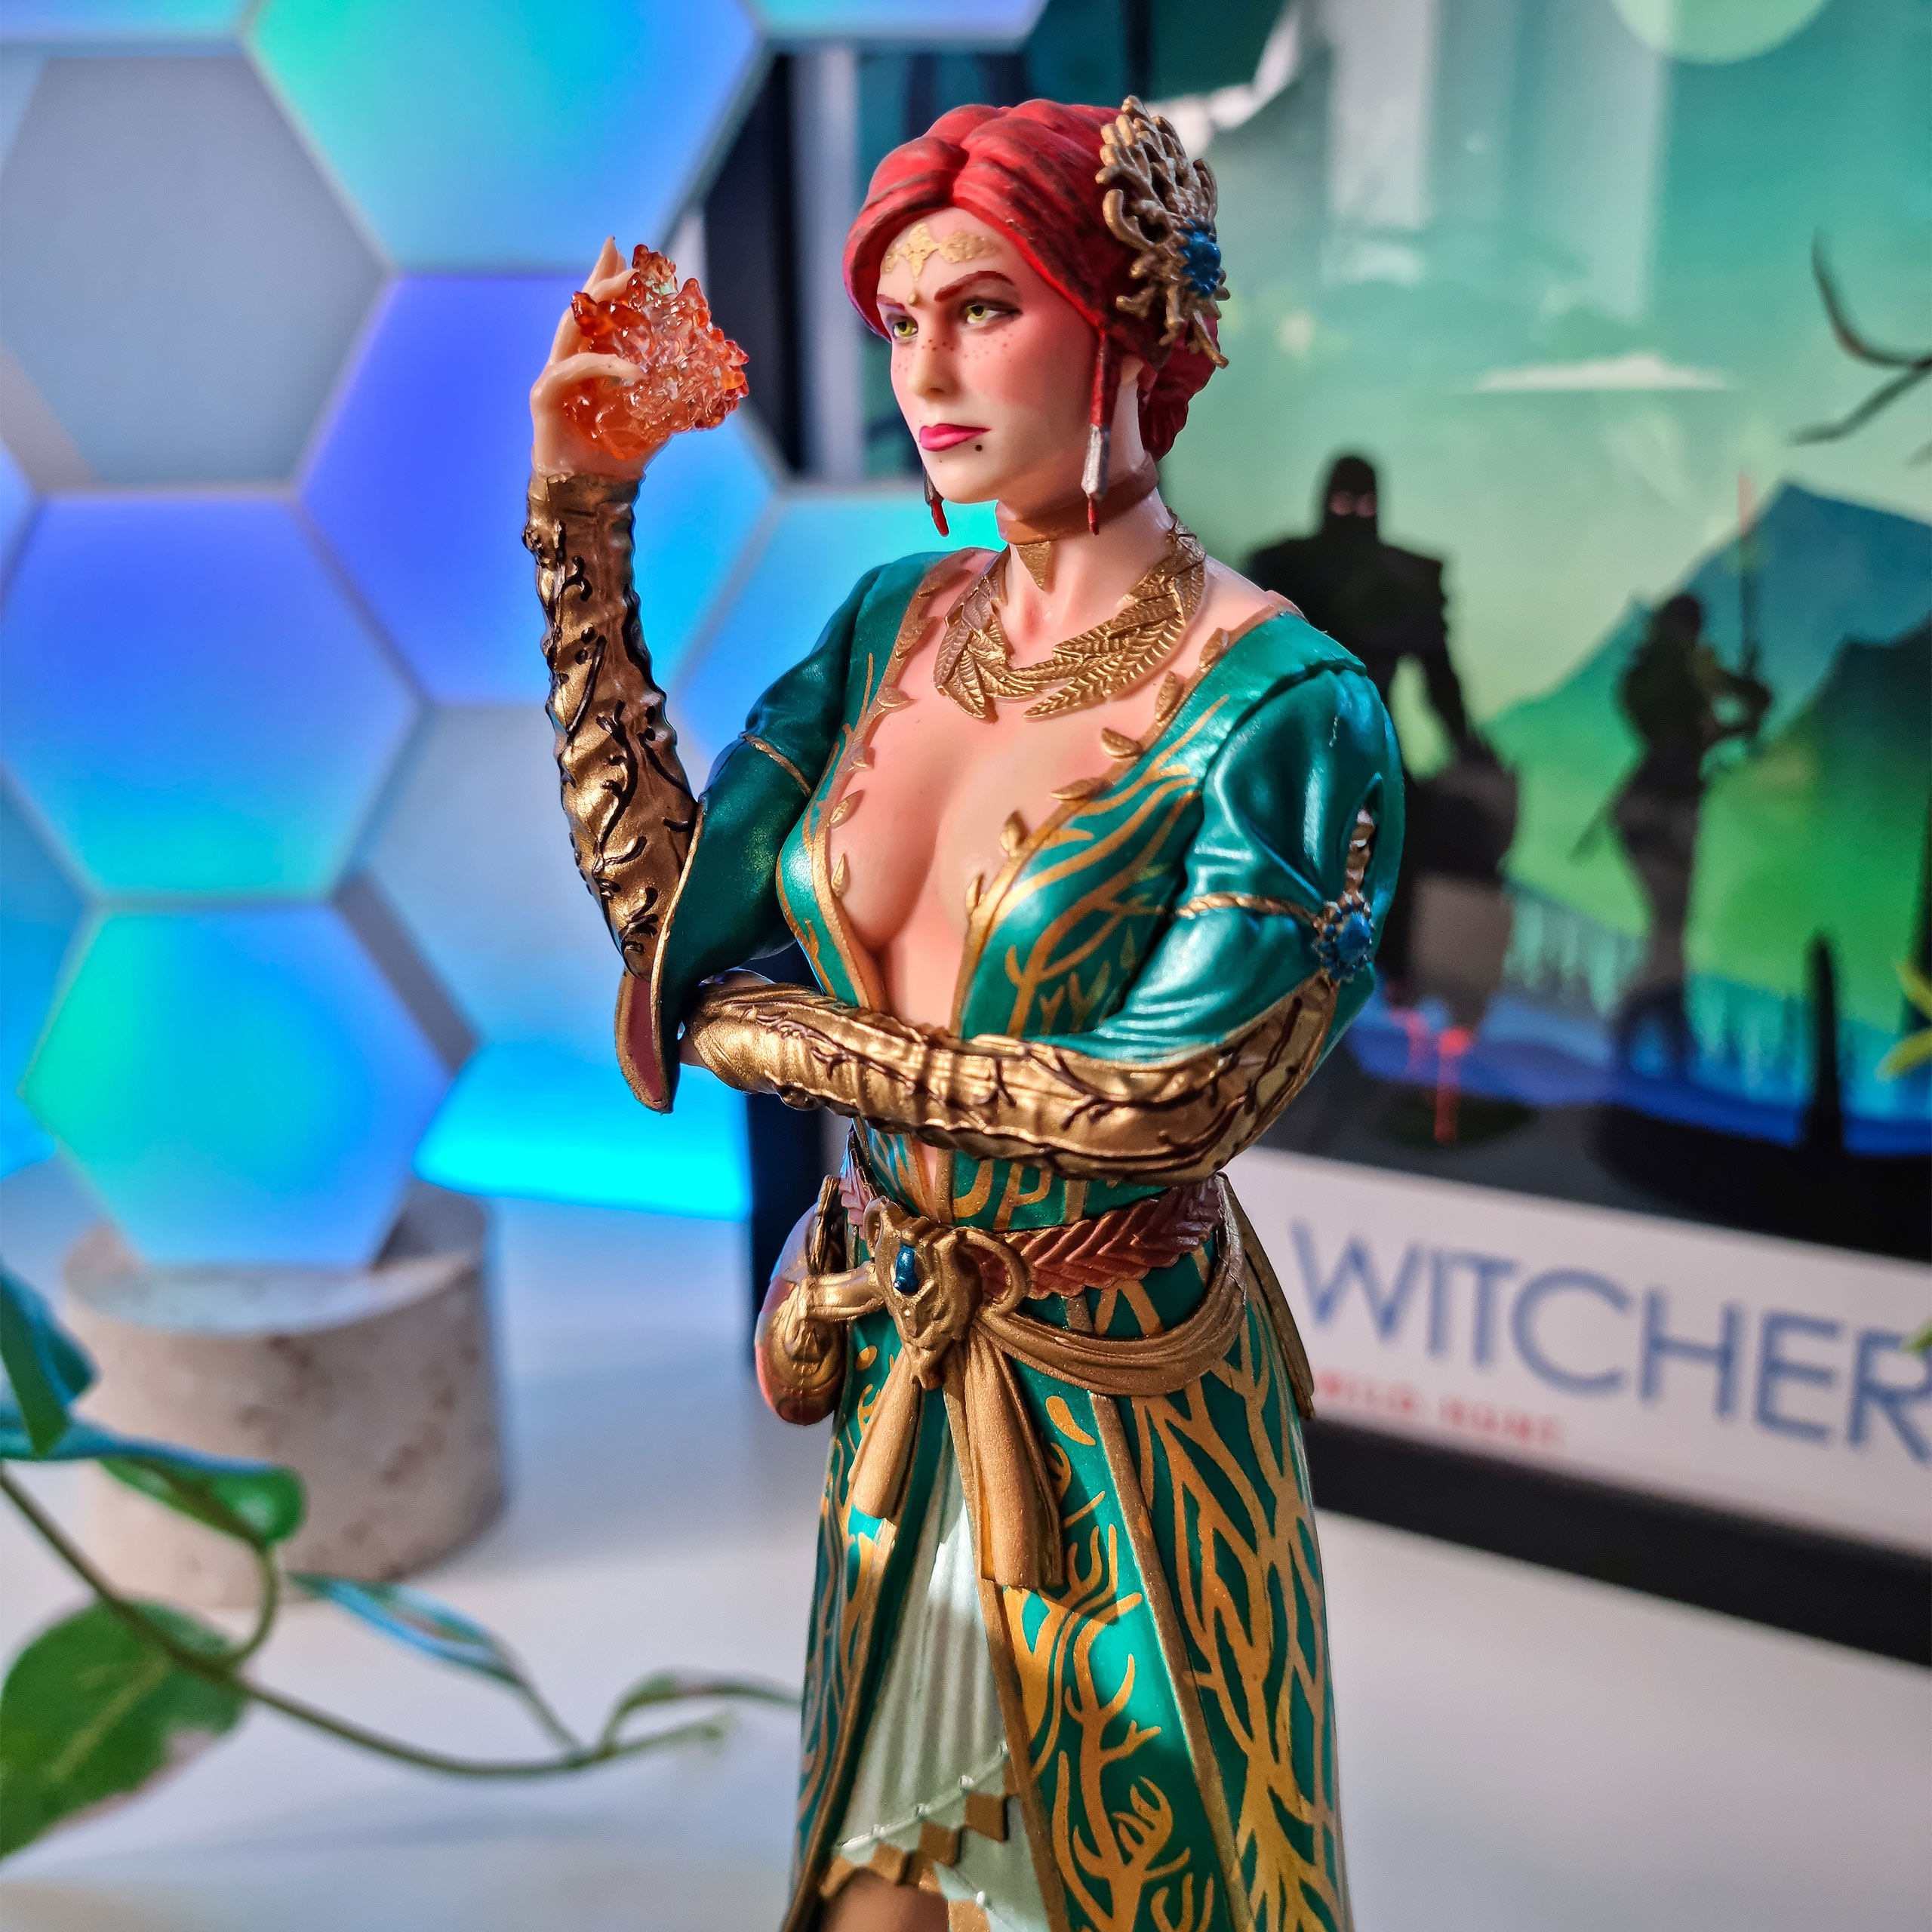 Witcher 3 - Triss Merigold Statue